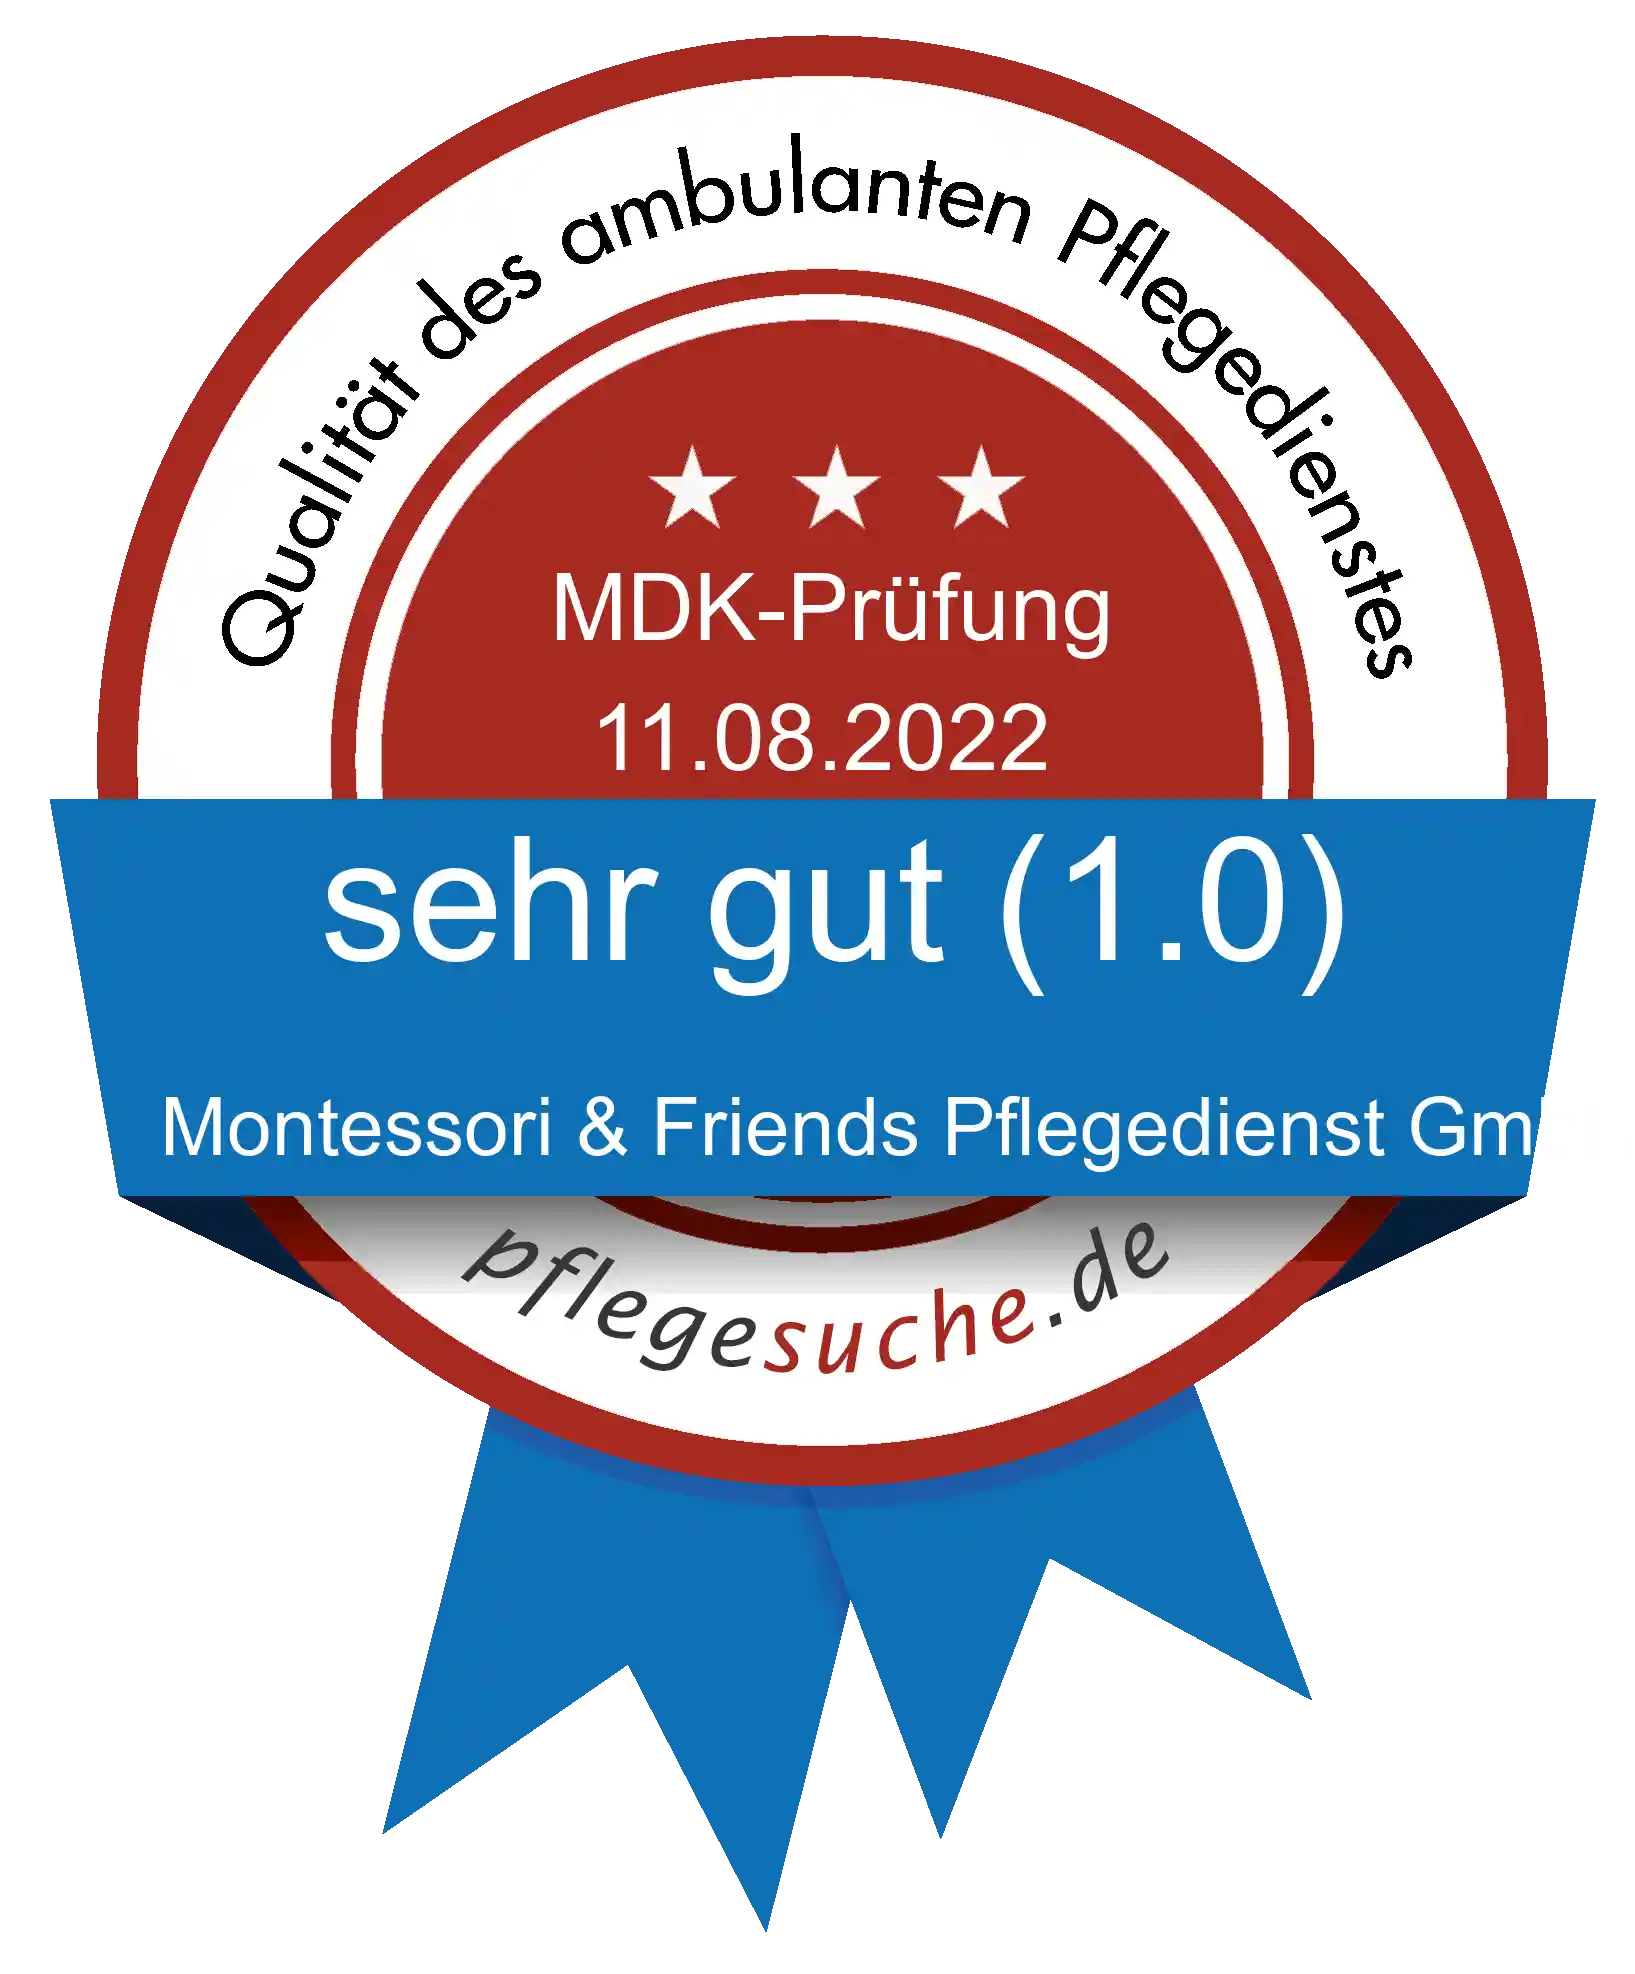 Siegel Benotung: Montessori & Friends Pflegedienst GmbH